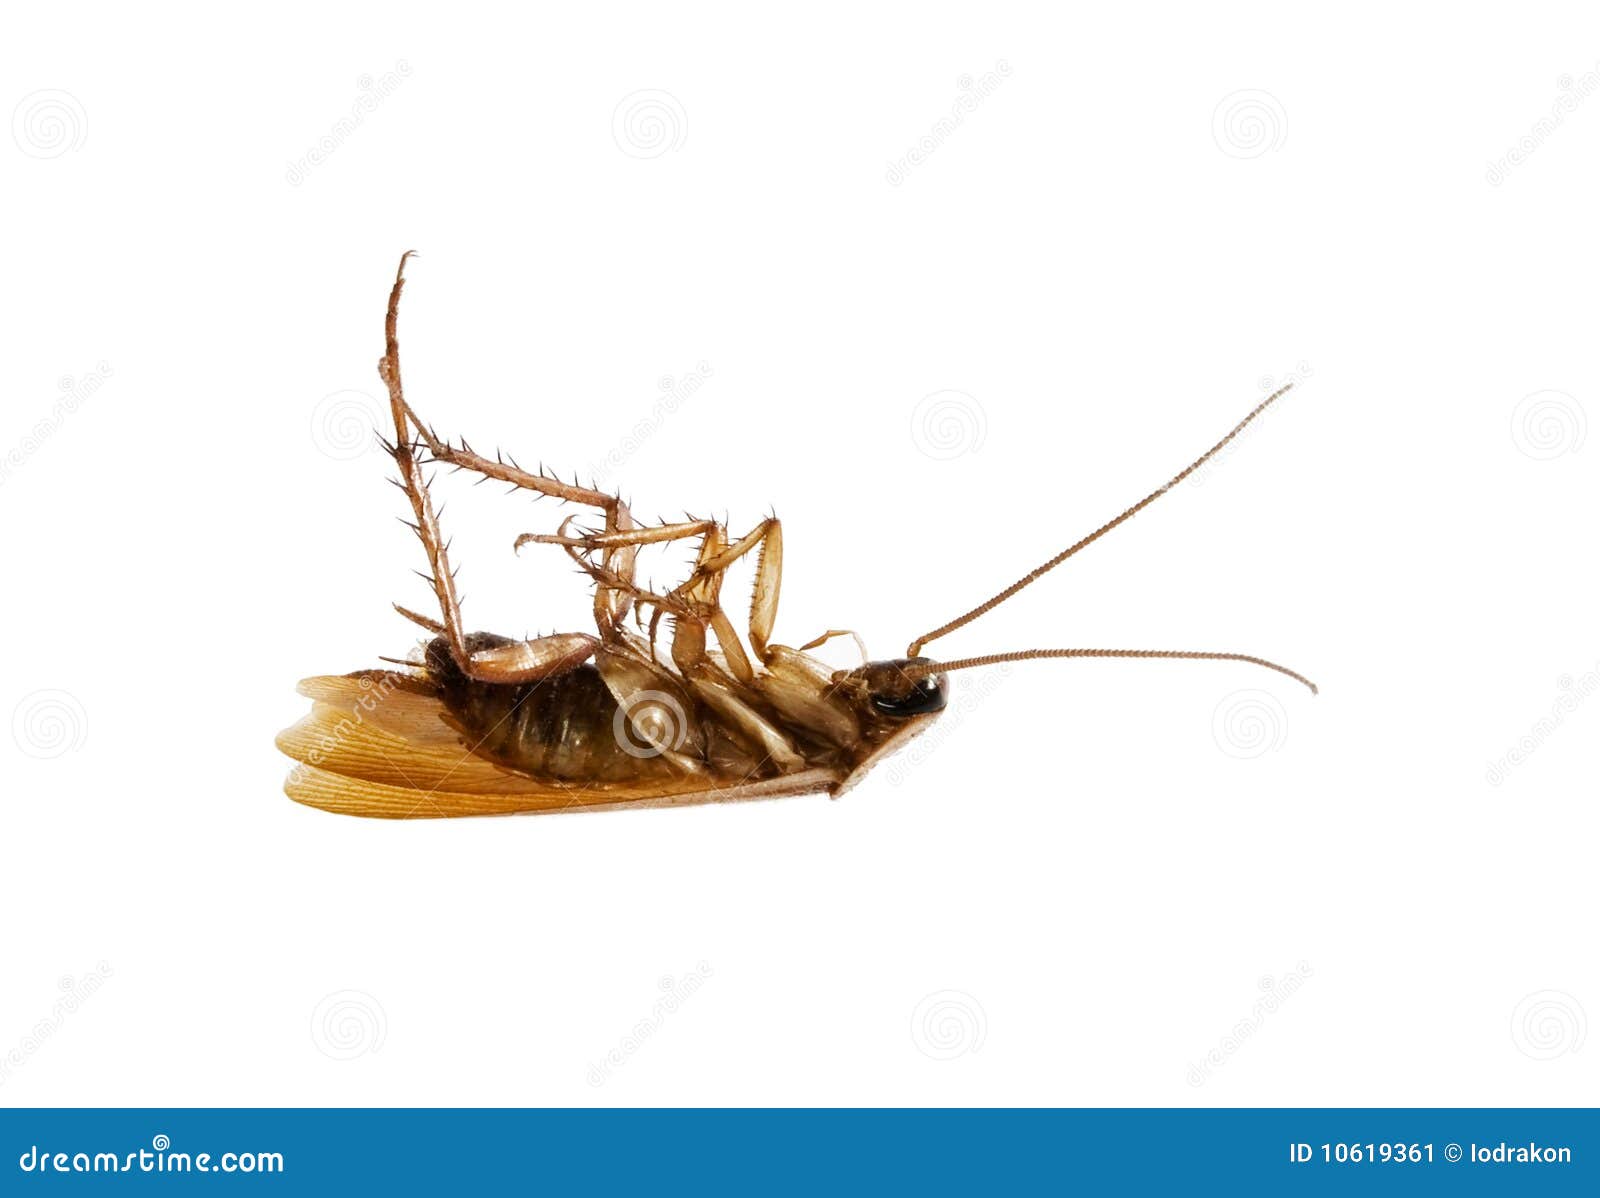 dead-cockroach-10619361.jpg